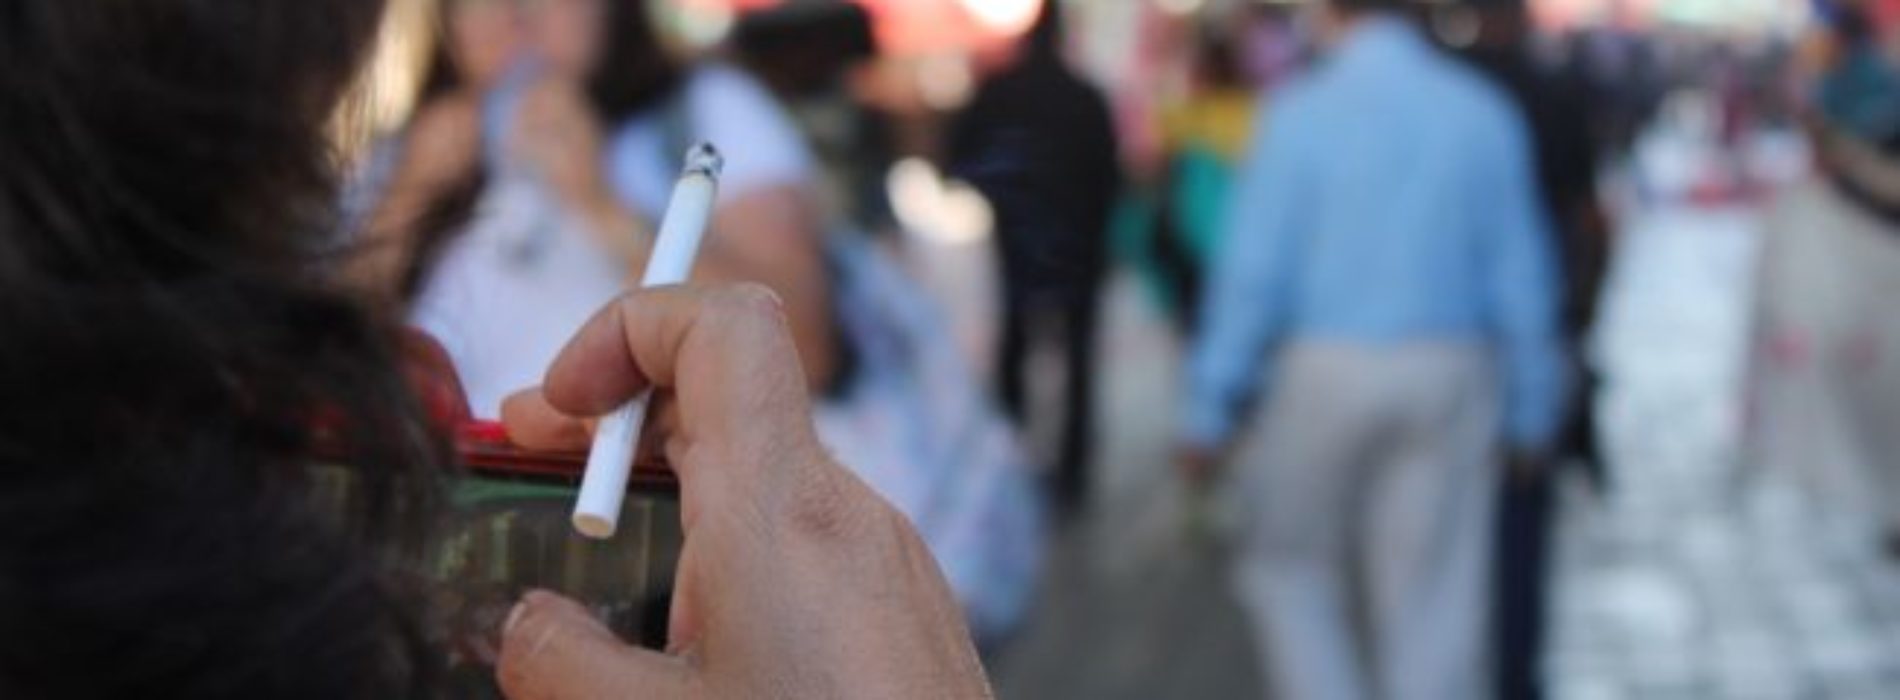 Alerta SSO sobre sustancias mortales en el tabaco